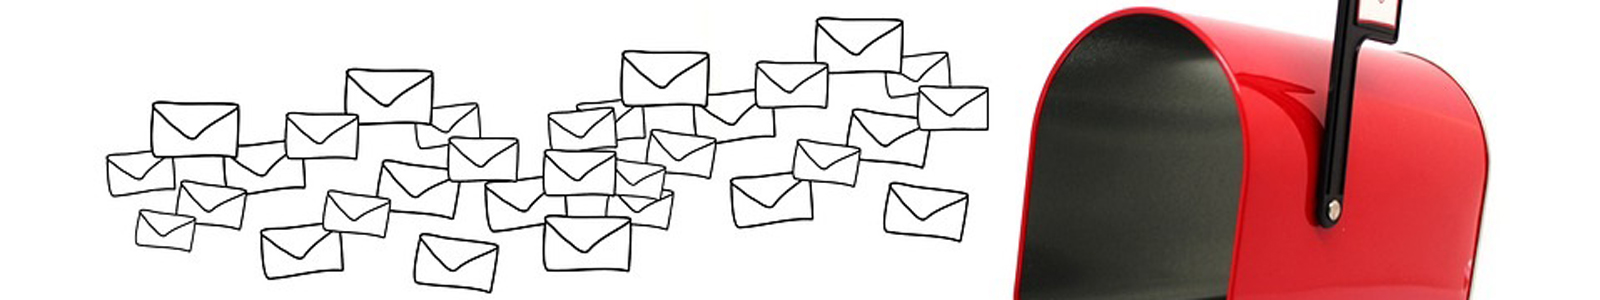 Briefkasten mit gezeichneten Briefumschlaegen ©pixabay